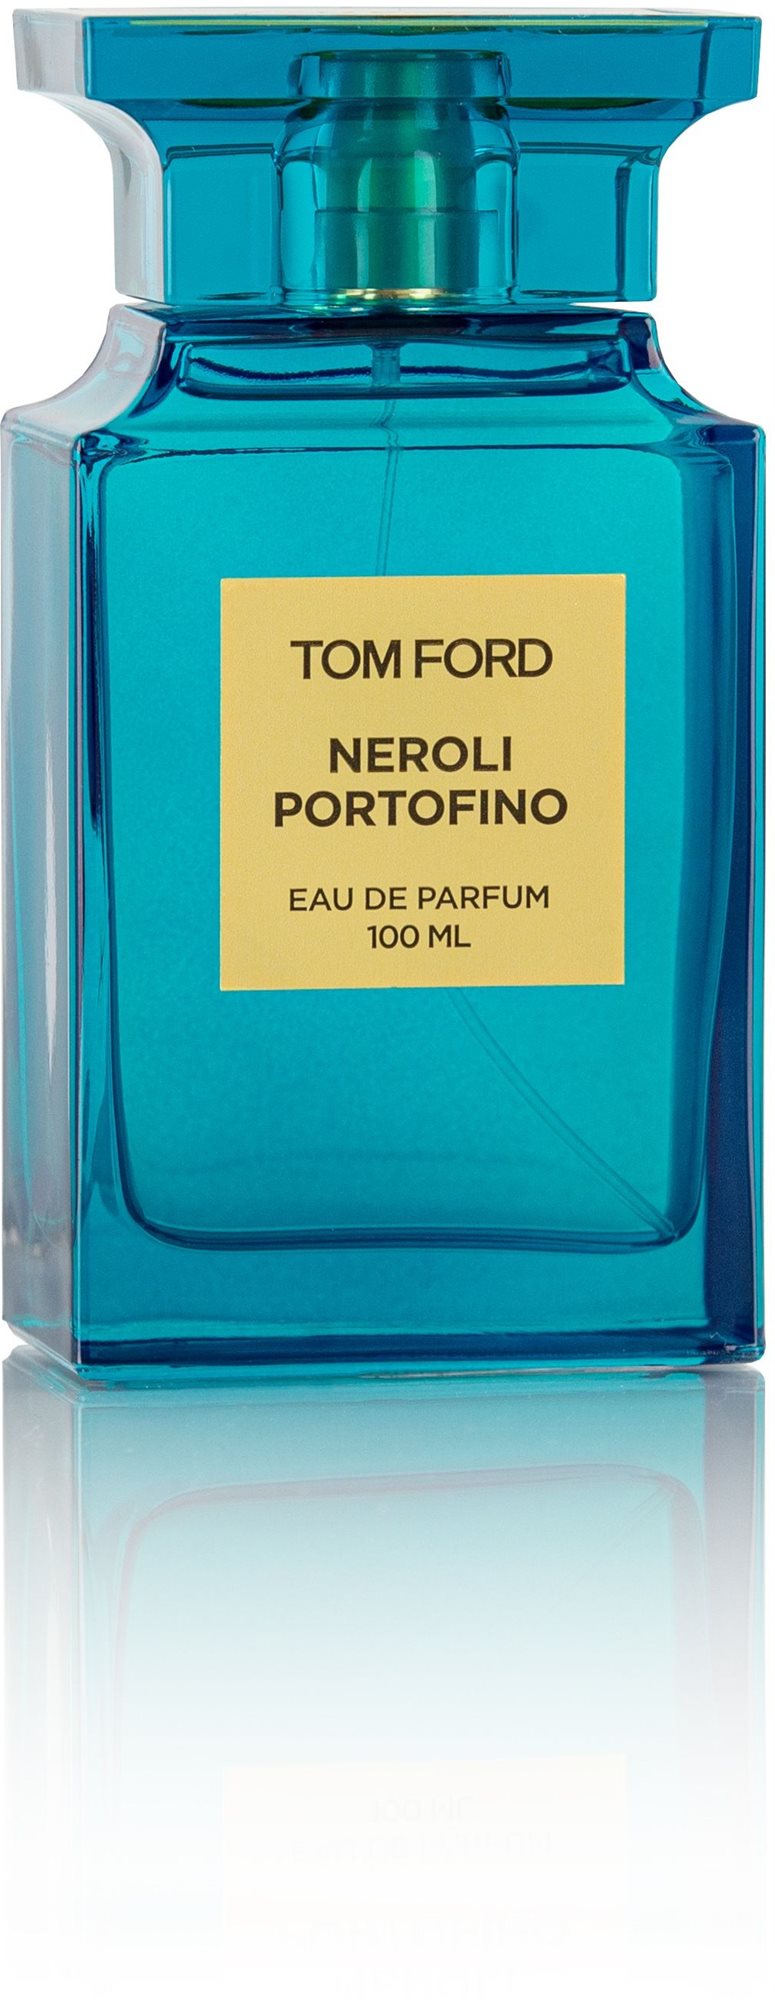 TOM FORD Neroli Portofino EdP 100 ml